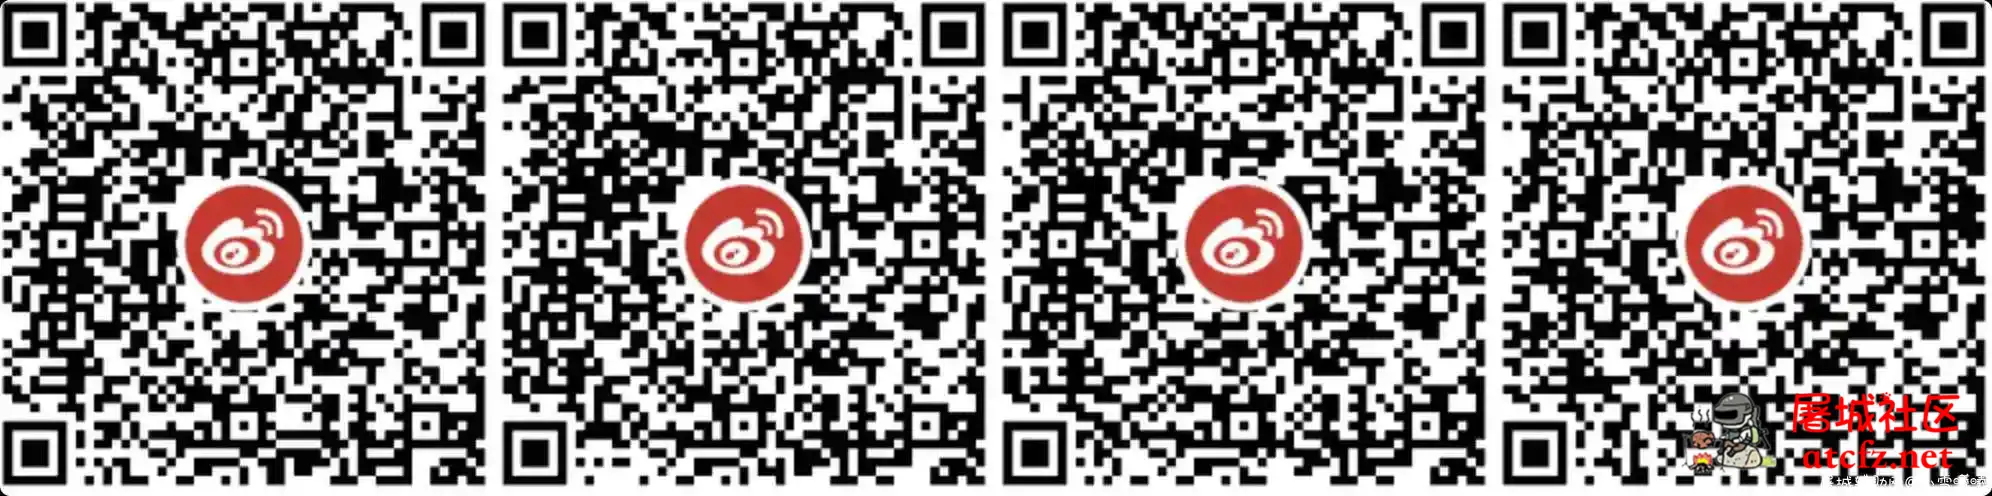 微博老用户万圣节抽3元红包活动 屠城辅助网www.tcfz1.com9829